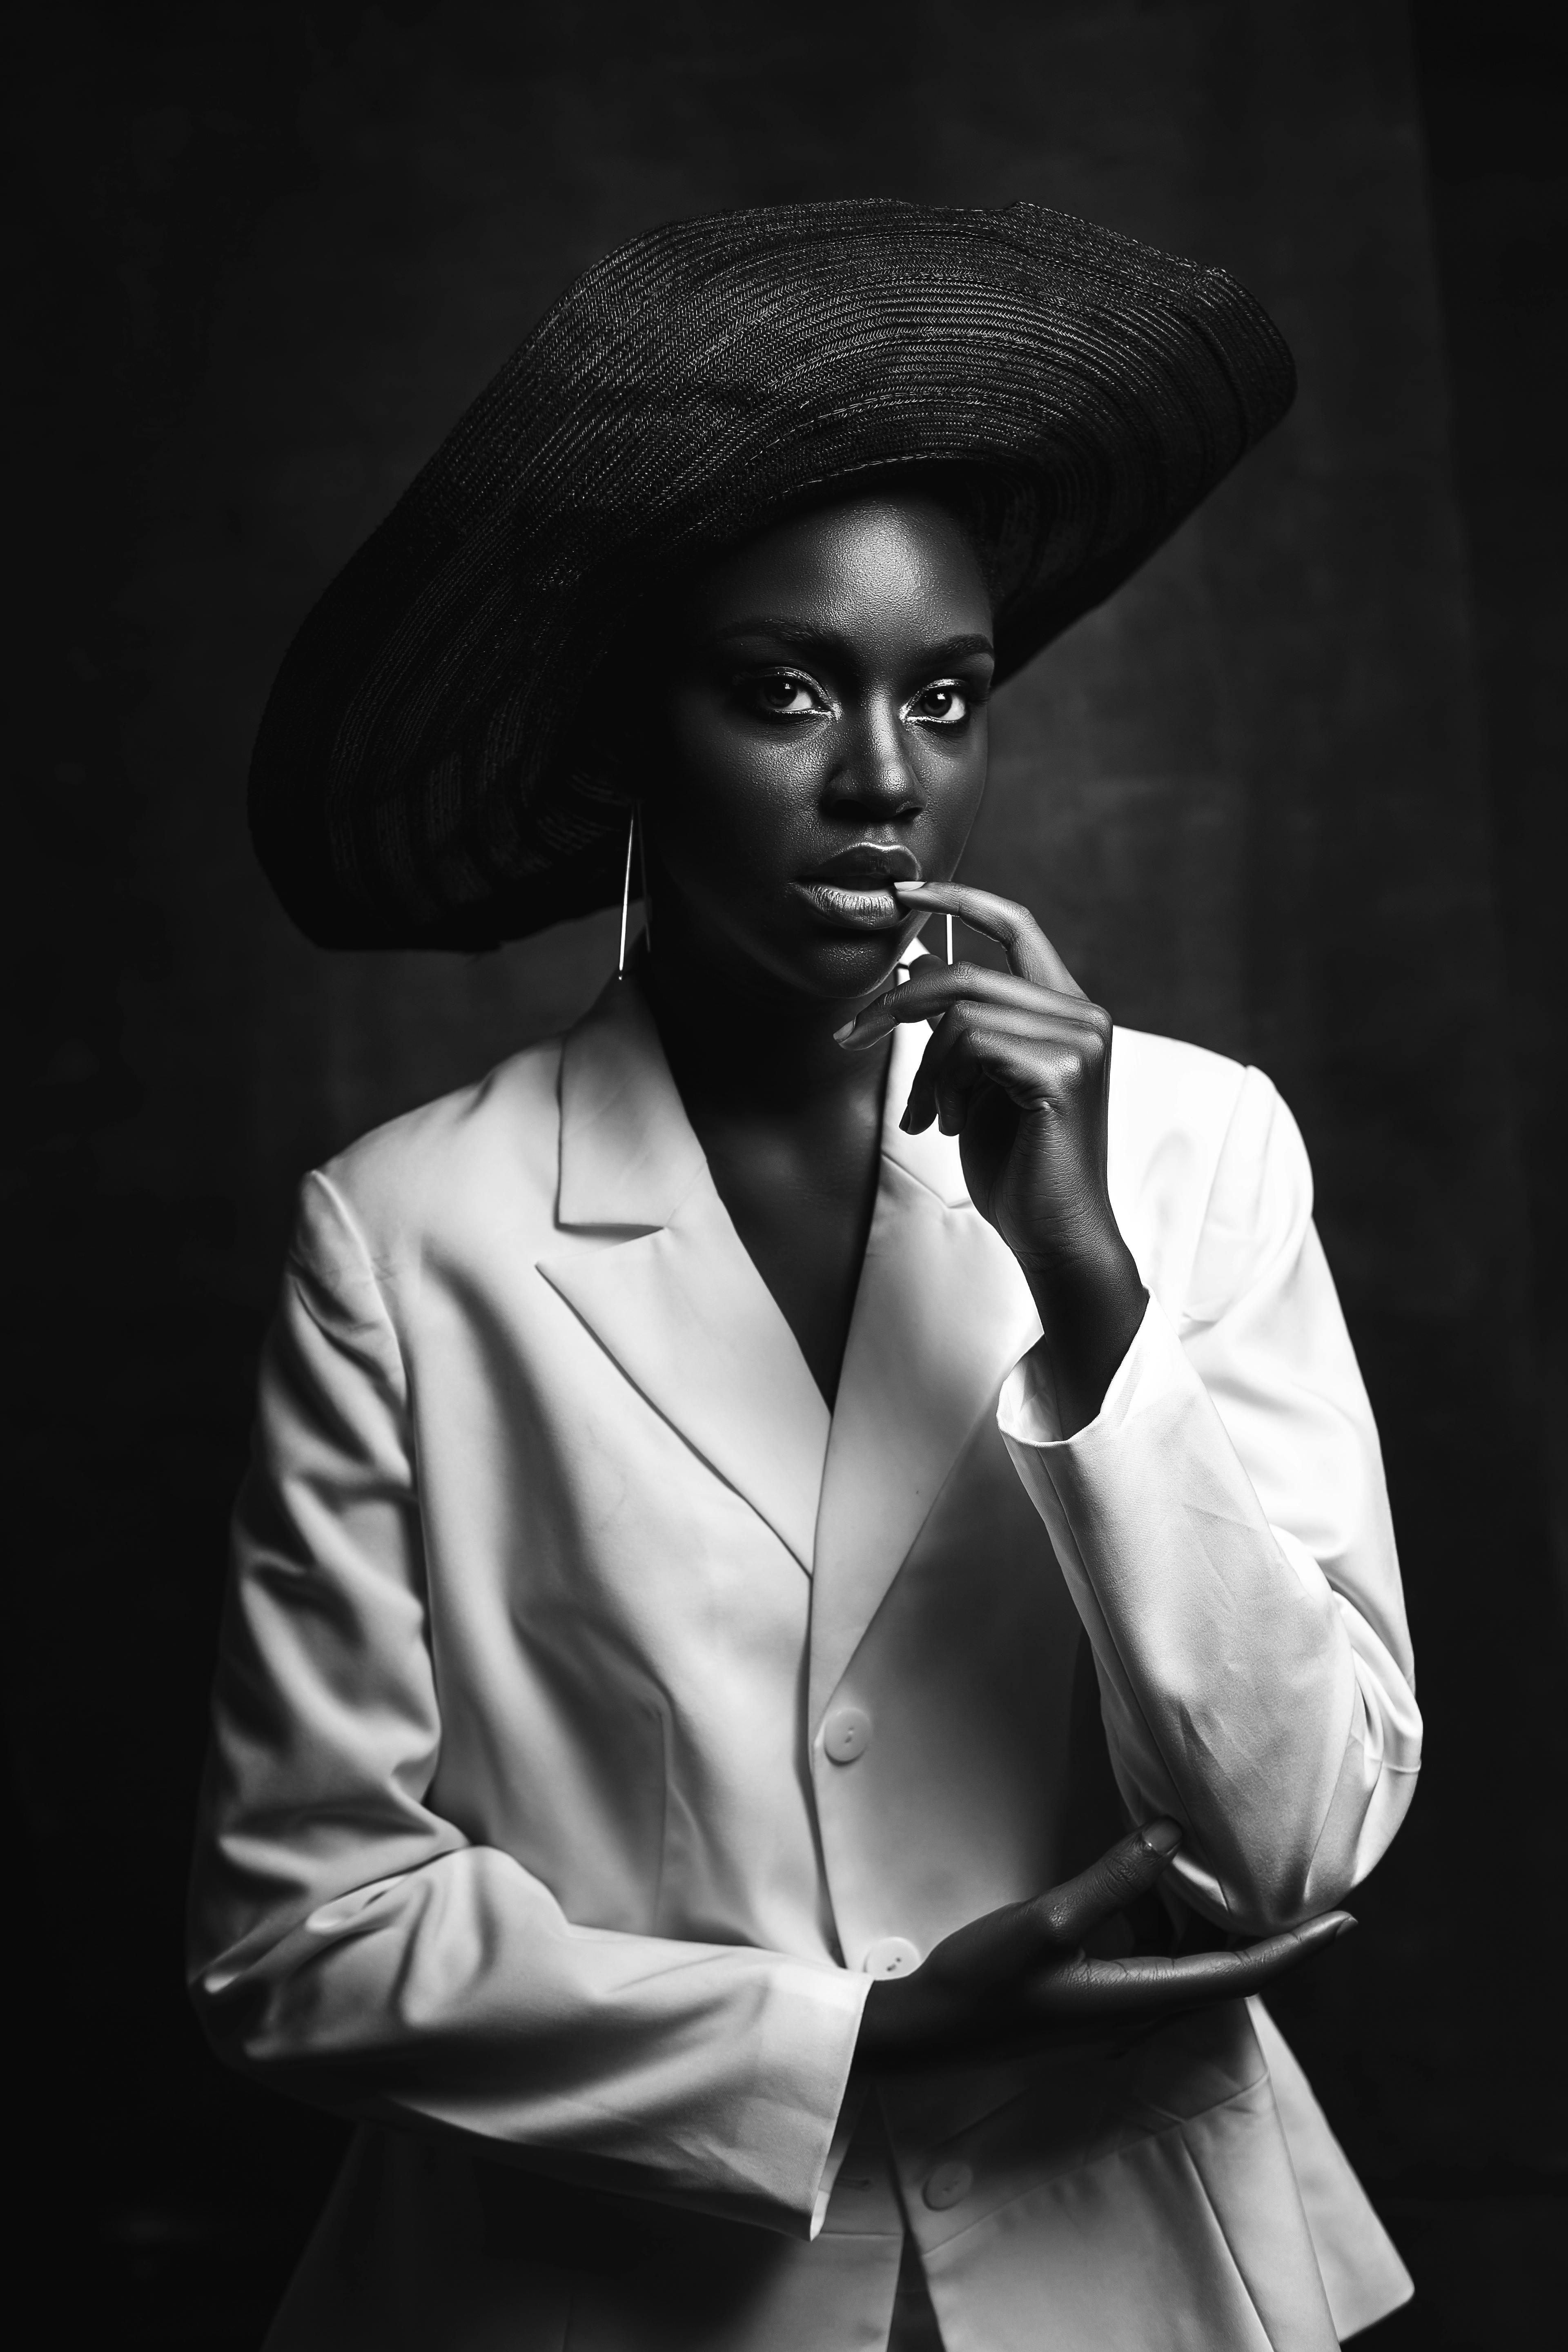 Mujer Caucásica Con Chaqueta Negra Aislada En Blanco Fotos, retratos,  imágenes y fotografía de archivo libres de derecho. Image 54554131